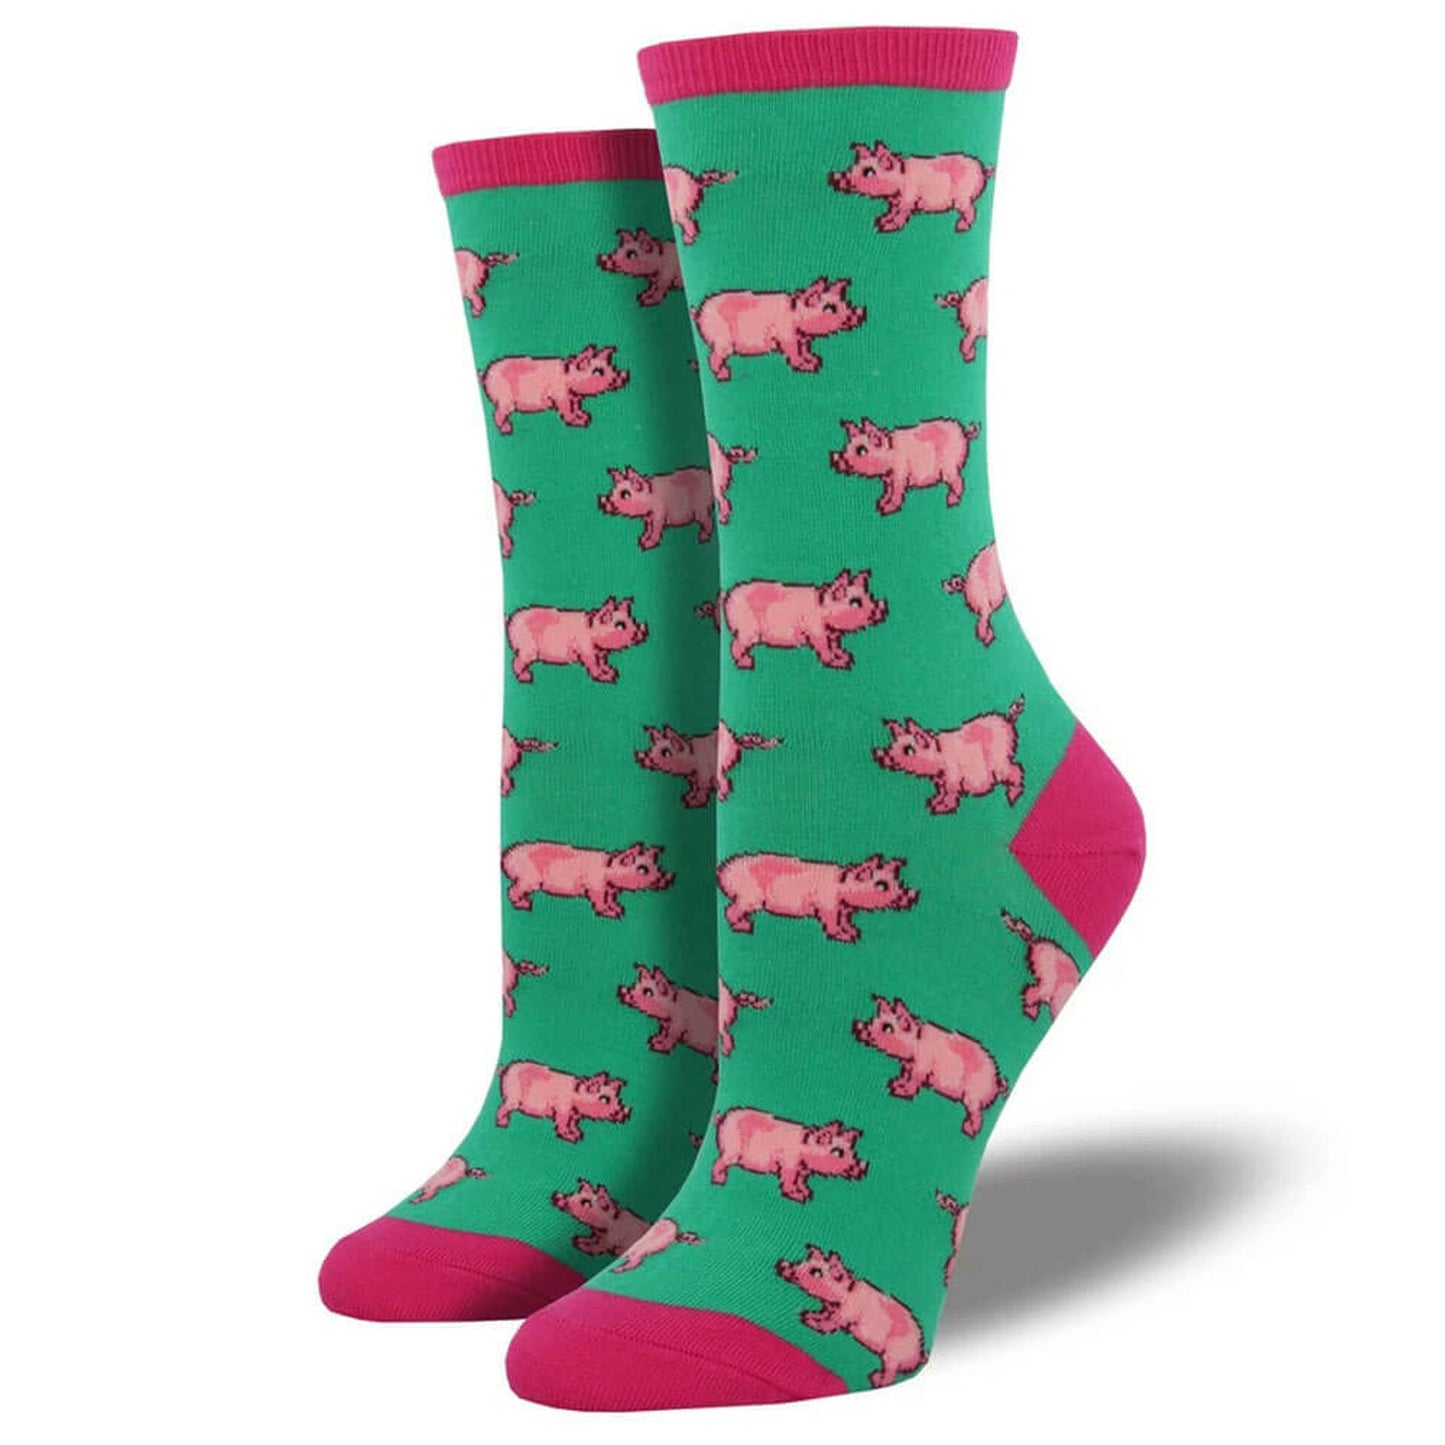 Socksmith Women's Pigs novelty sock